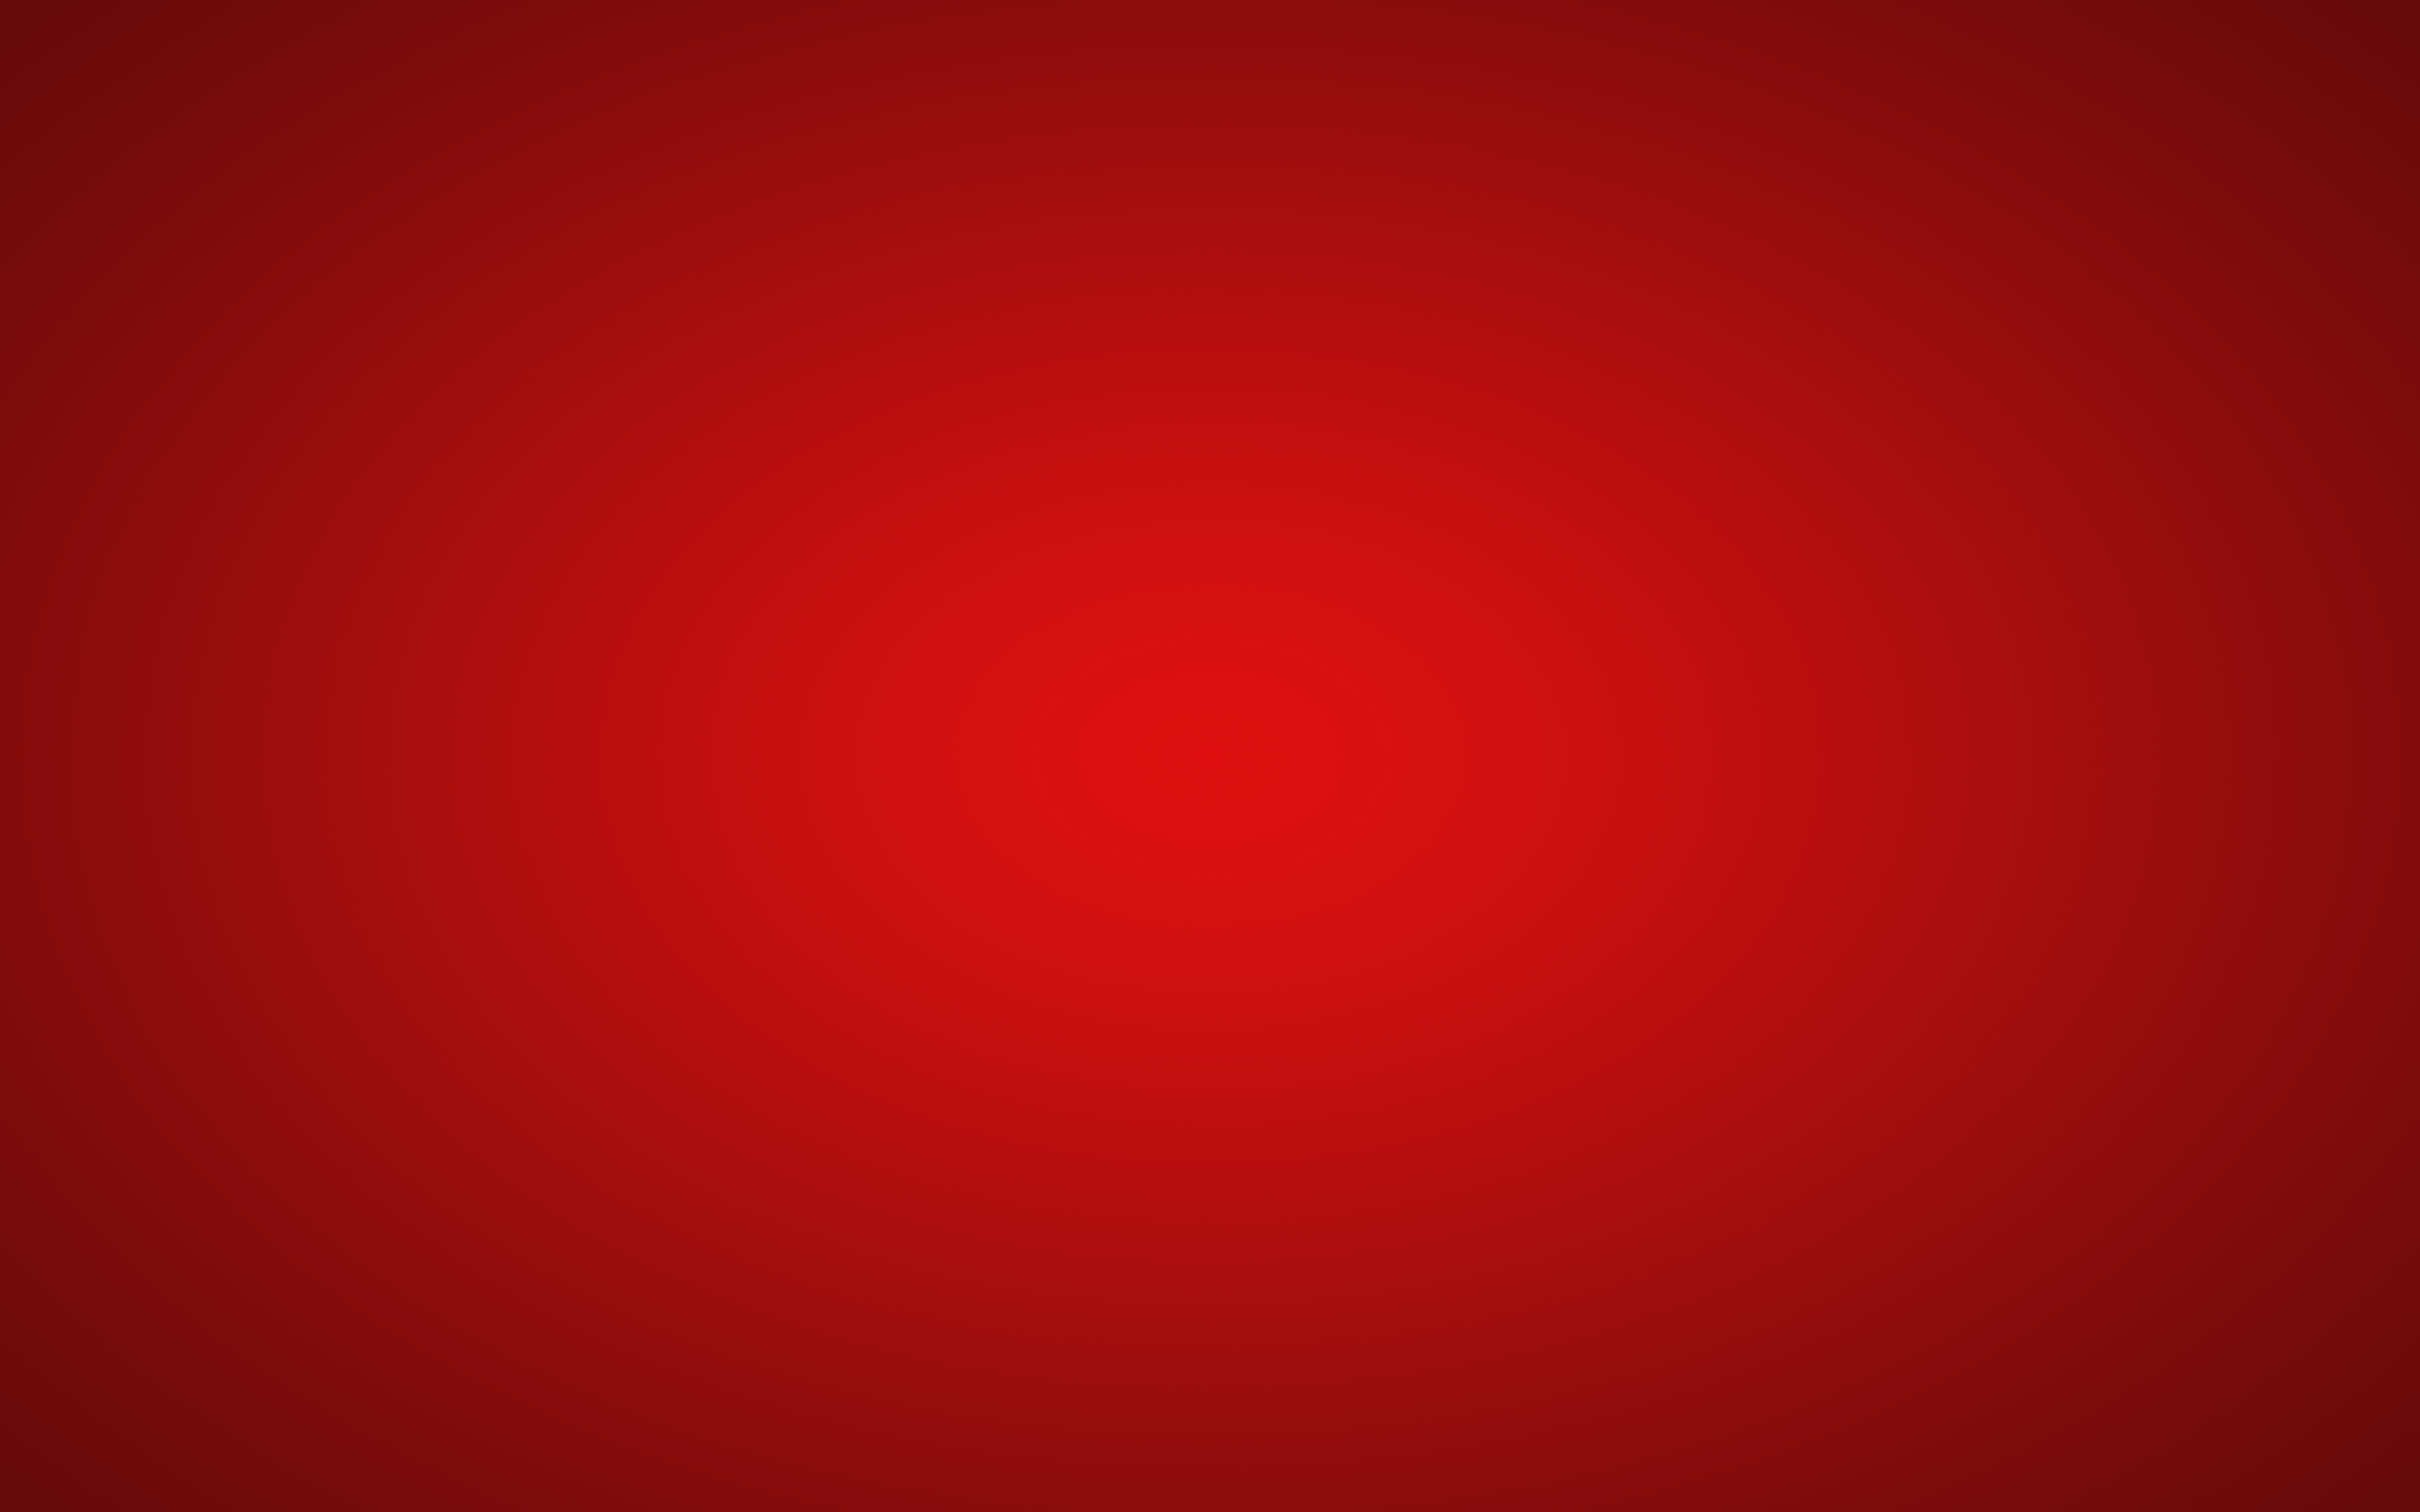 Hình nền đỏ: Hình nền là một trong những yếu tố quan trọng tạo nên vẻ đẹp của chiếc điện thoại được yêu thích. Sử dụng hình nền đỏ sẽ giúp bạn thể hiện sự táo bạo, nổi bật và đầy phong cách của mình. Hãy cập nhật ngay hình nền đỏ đẹp mắt để thu hút sự chú ý của mọi người ngoài đường nhé!